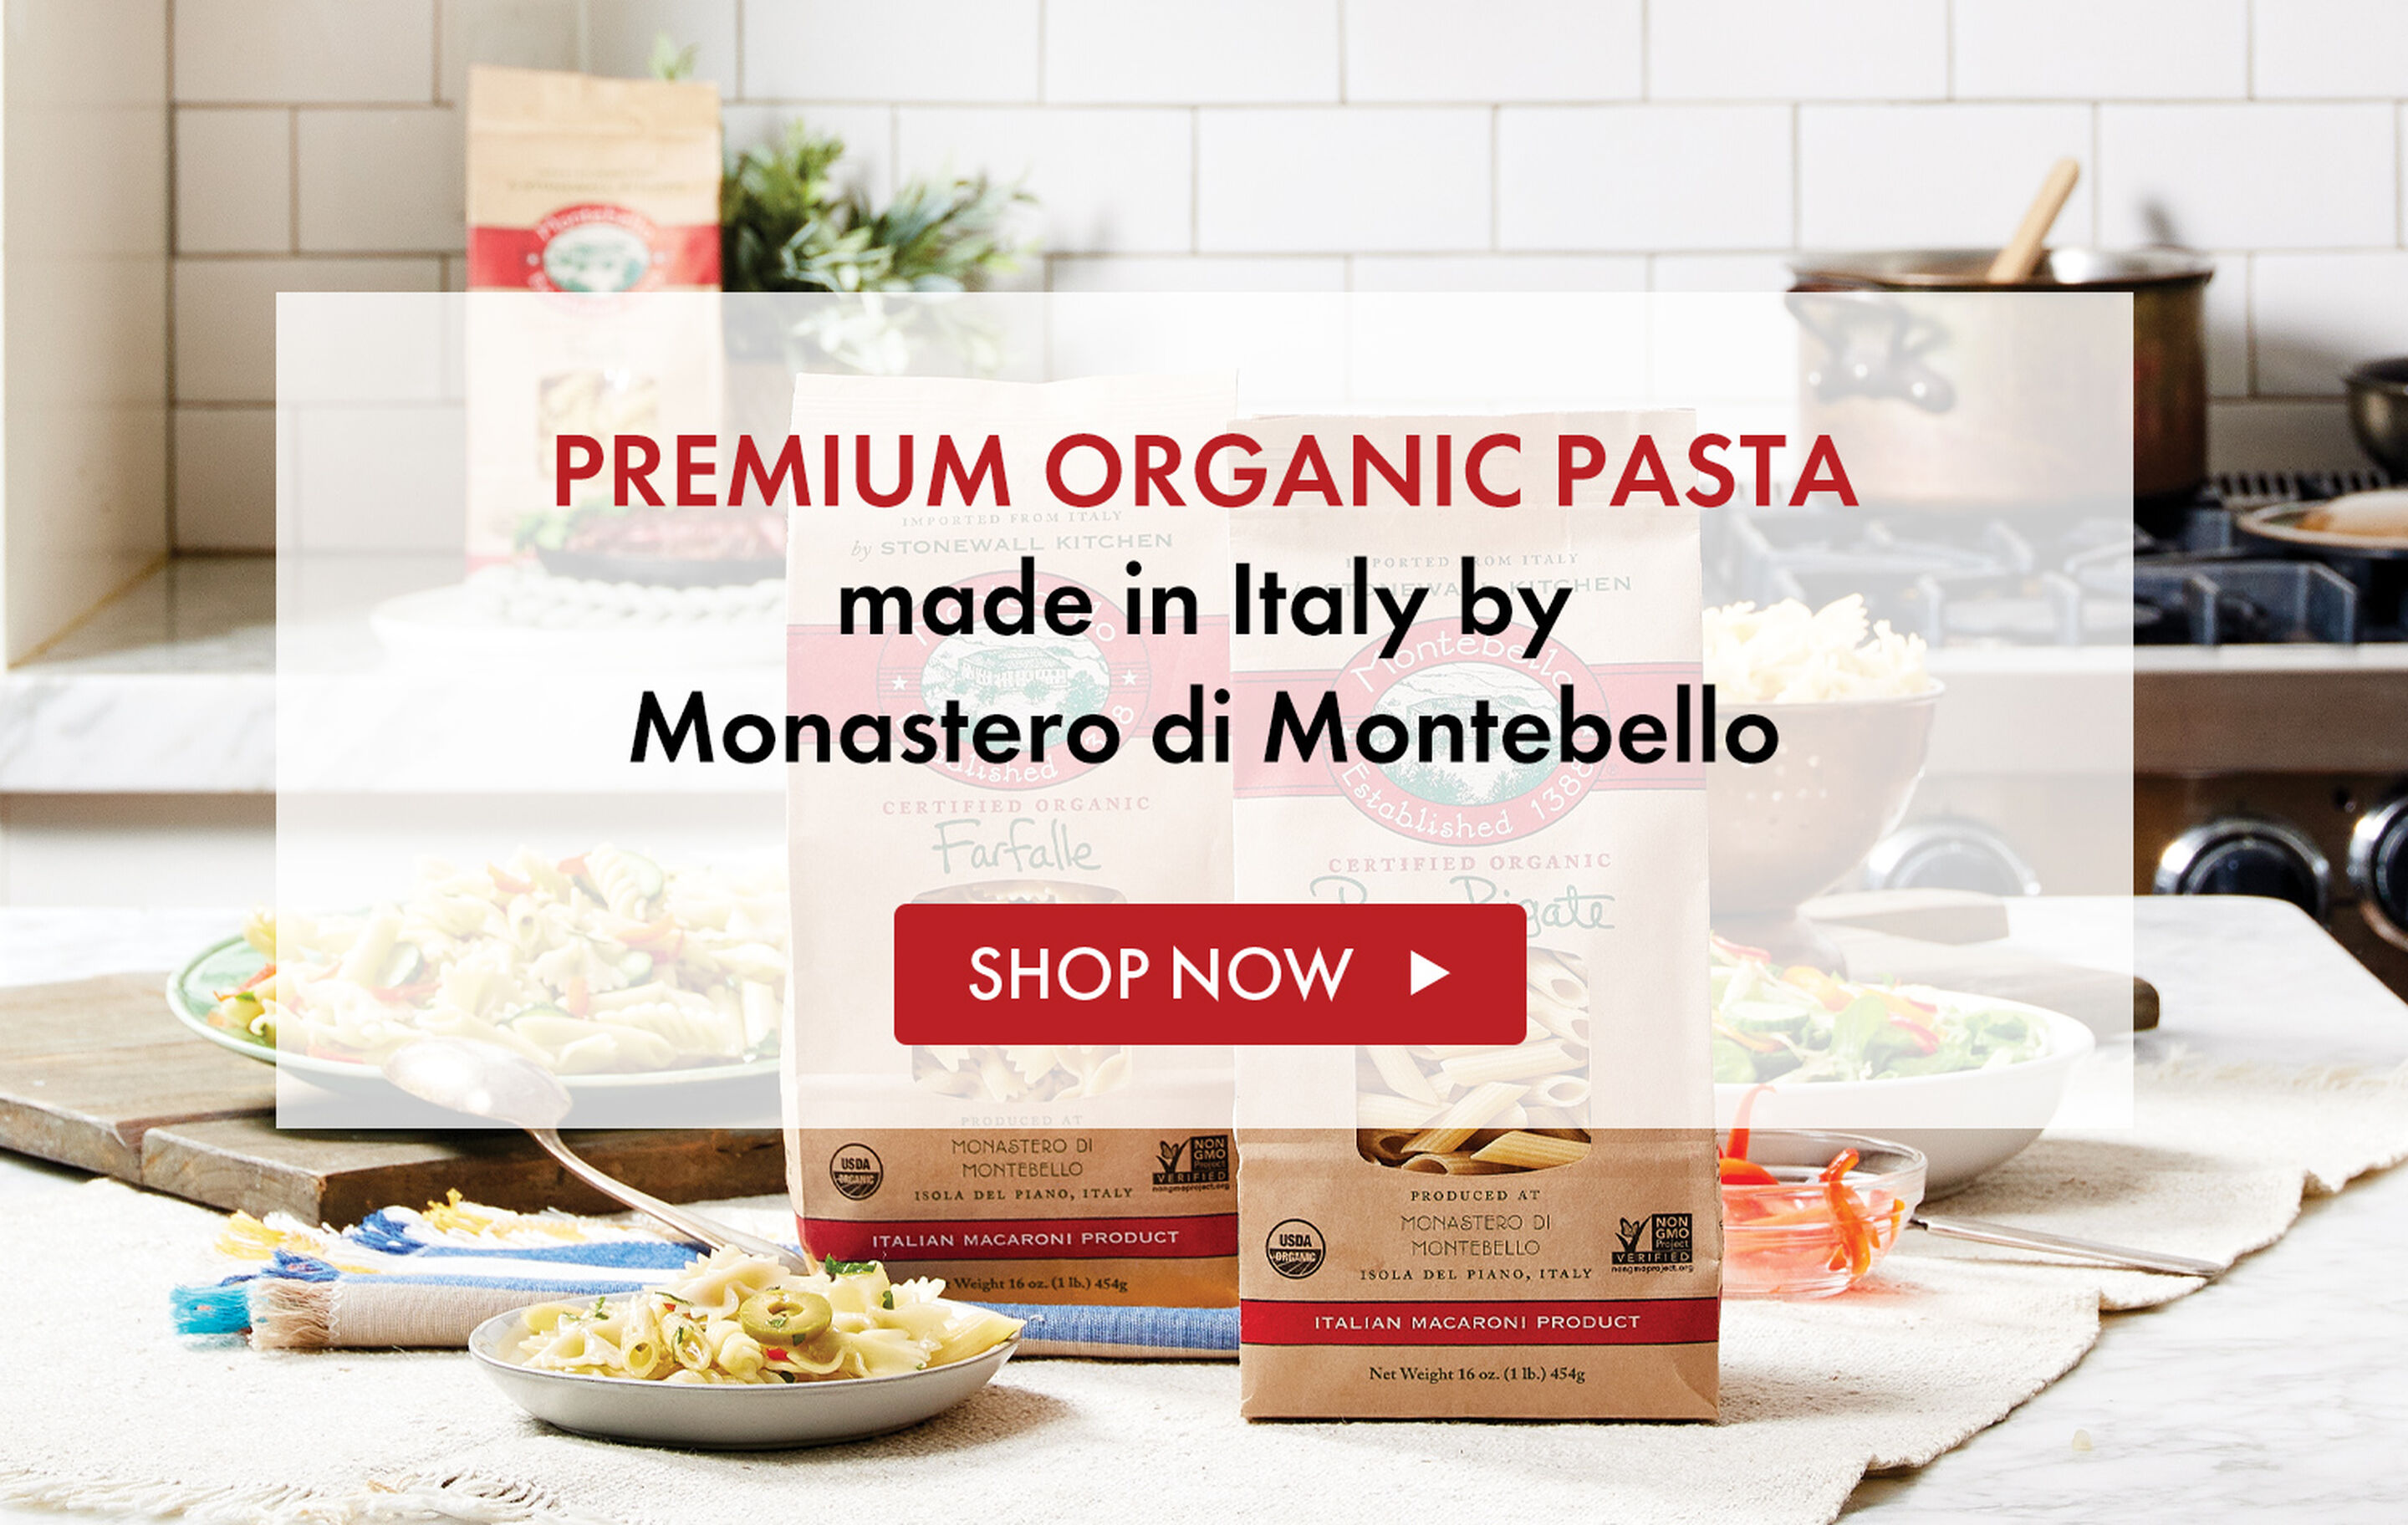 Montebello - Premium organic pasta made in Italy by Monastero di Montebello - Shop Now